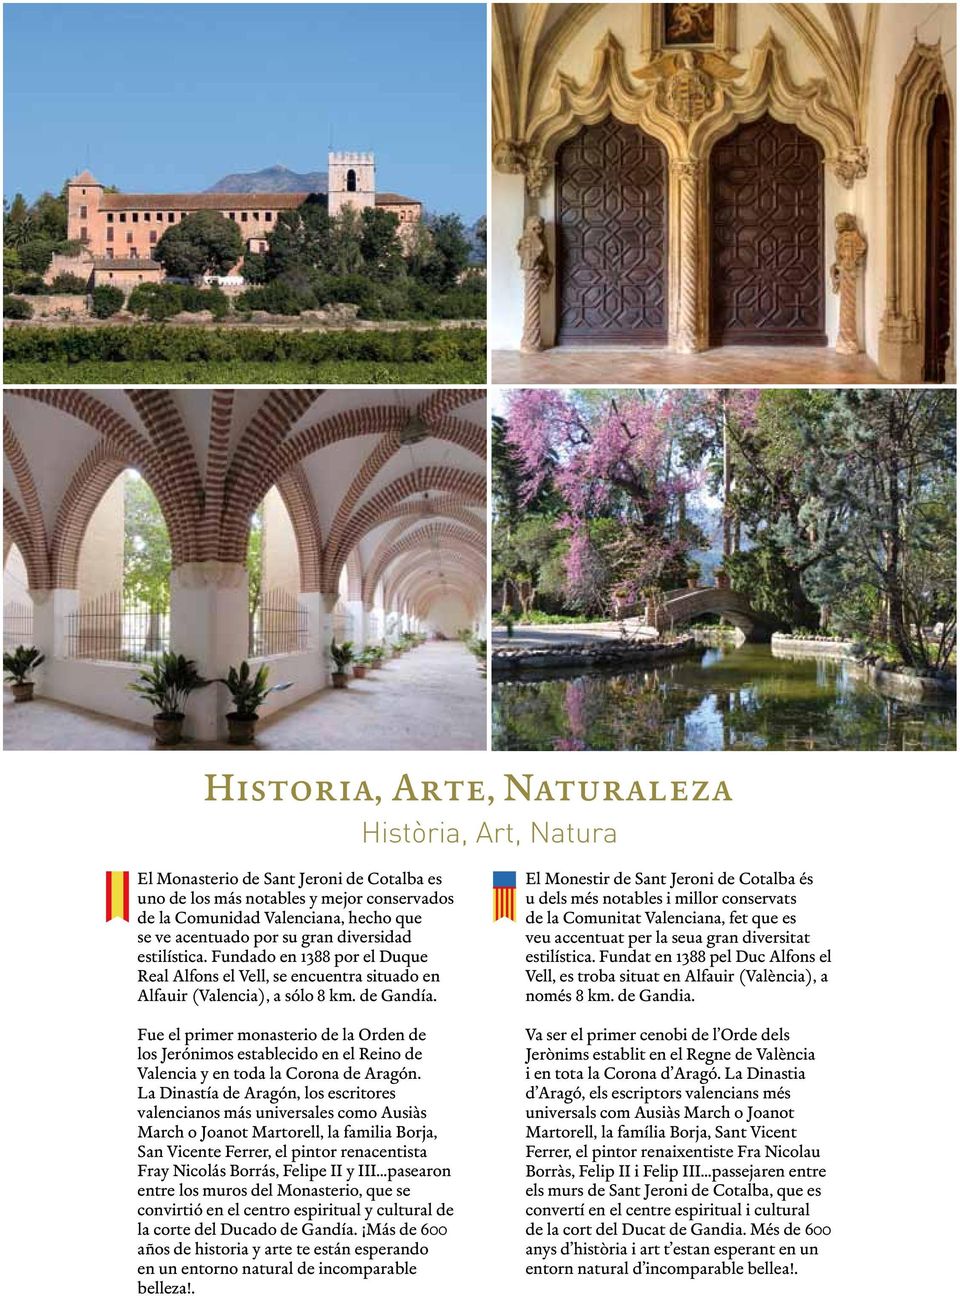 Fue el primer monasterio de la Orden de los Jerónimos establecido en el Reino de Valencia y en toda la Corona de Aragón.